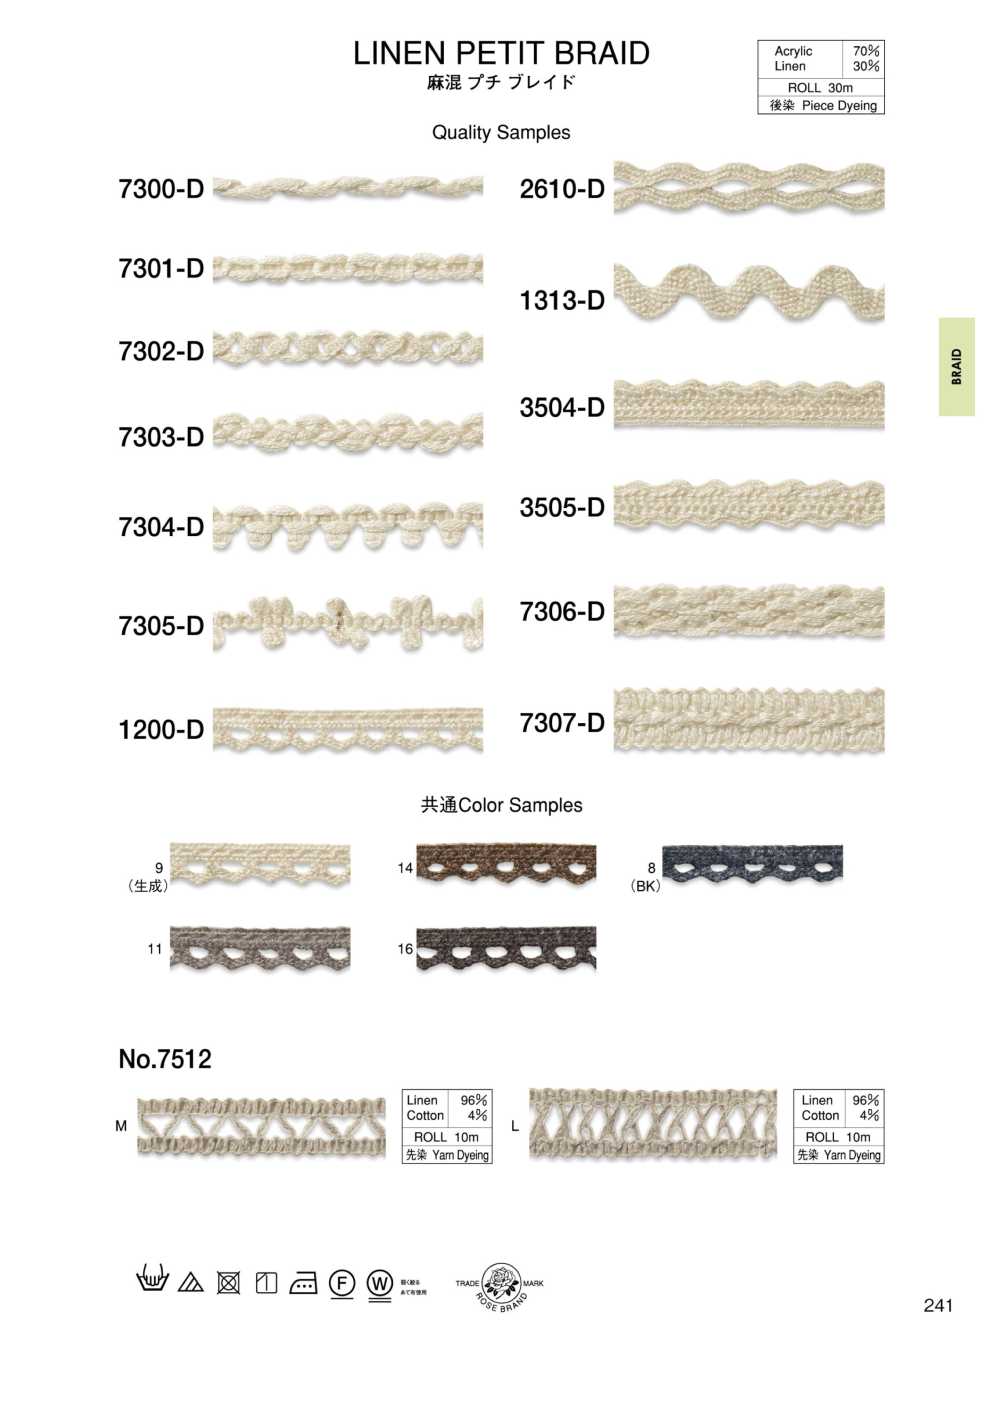 7300-D Linen Blend Petite Braid[Ribbon Tape Cord] ROSE BRAND (Marushin)